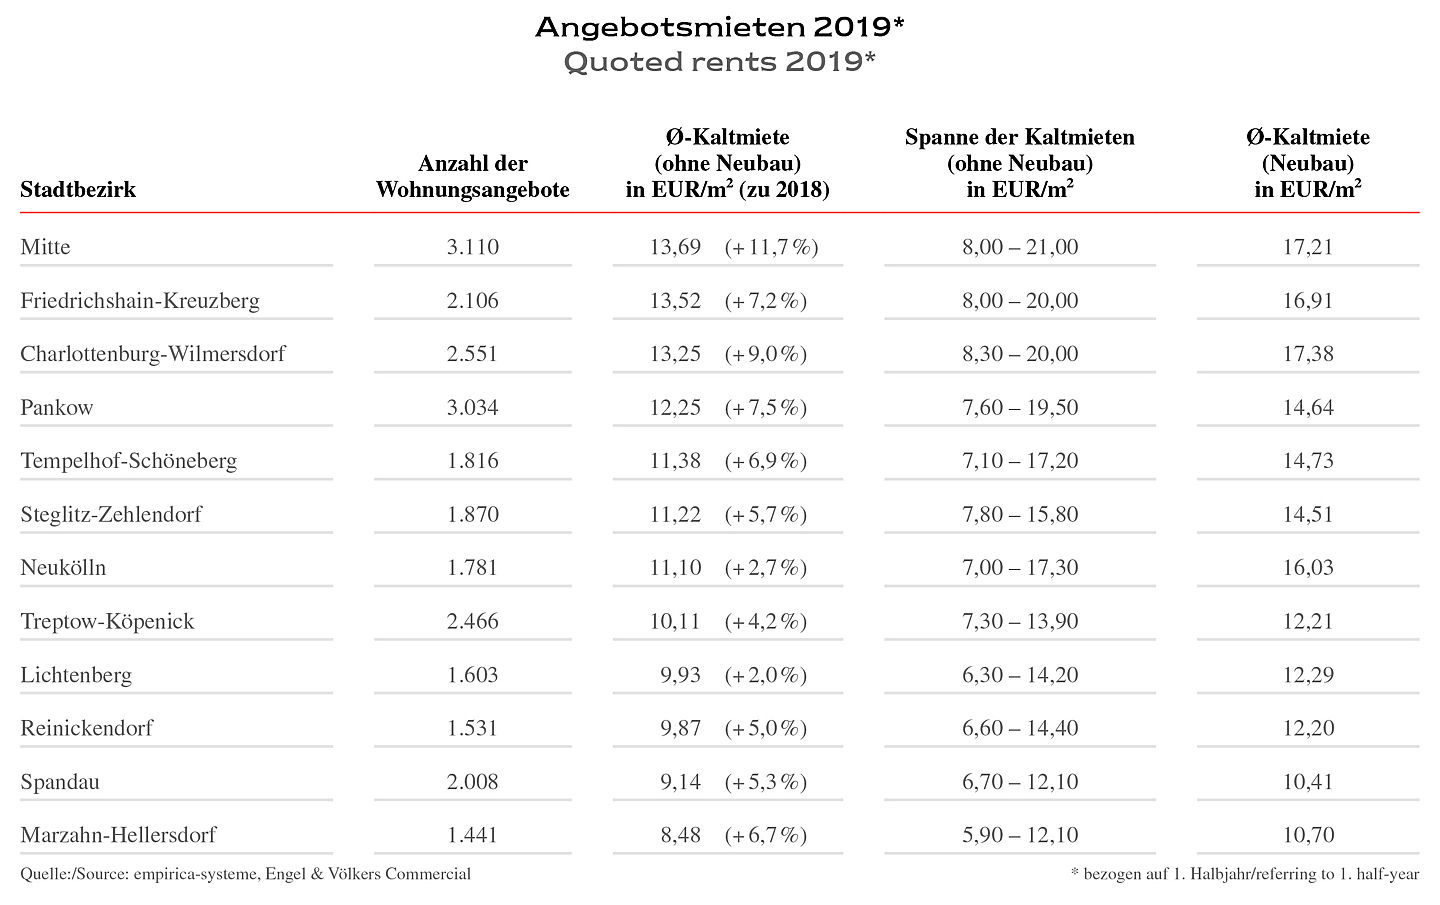  Berlin
- Angebotsmieten 2019 – Marktreport Wohn- & Geschäftshäuser 2019/2020 – Engel & Völkers Commercial Berlin